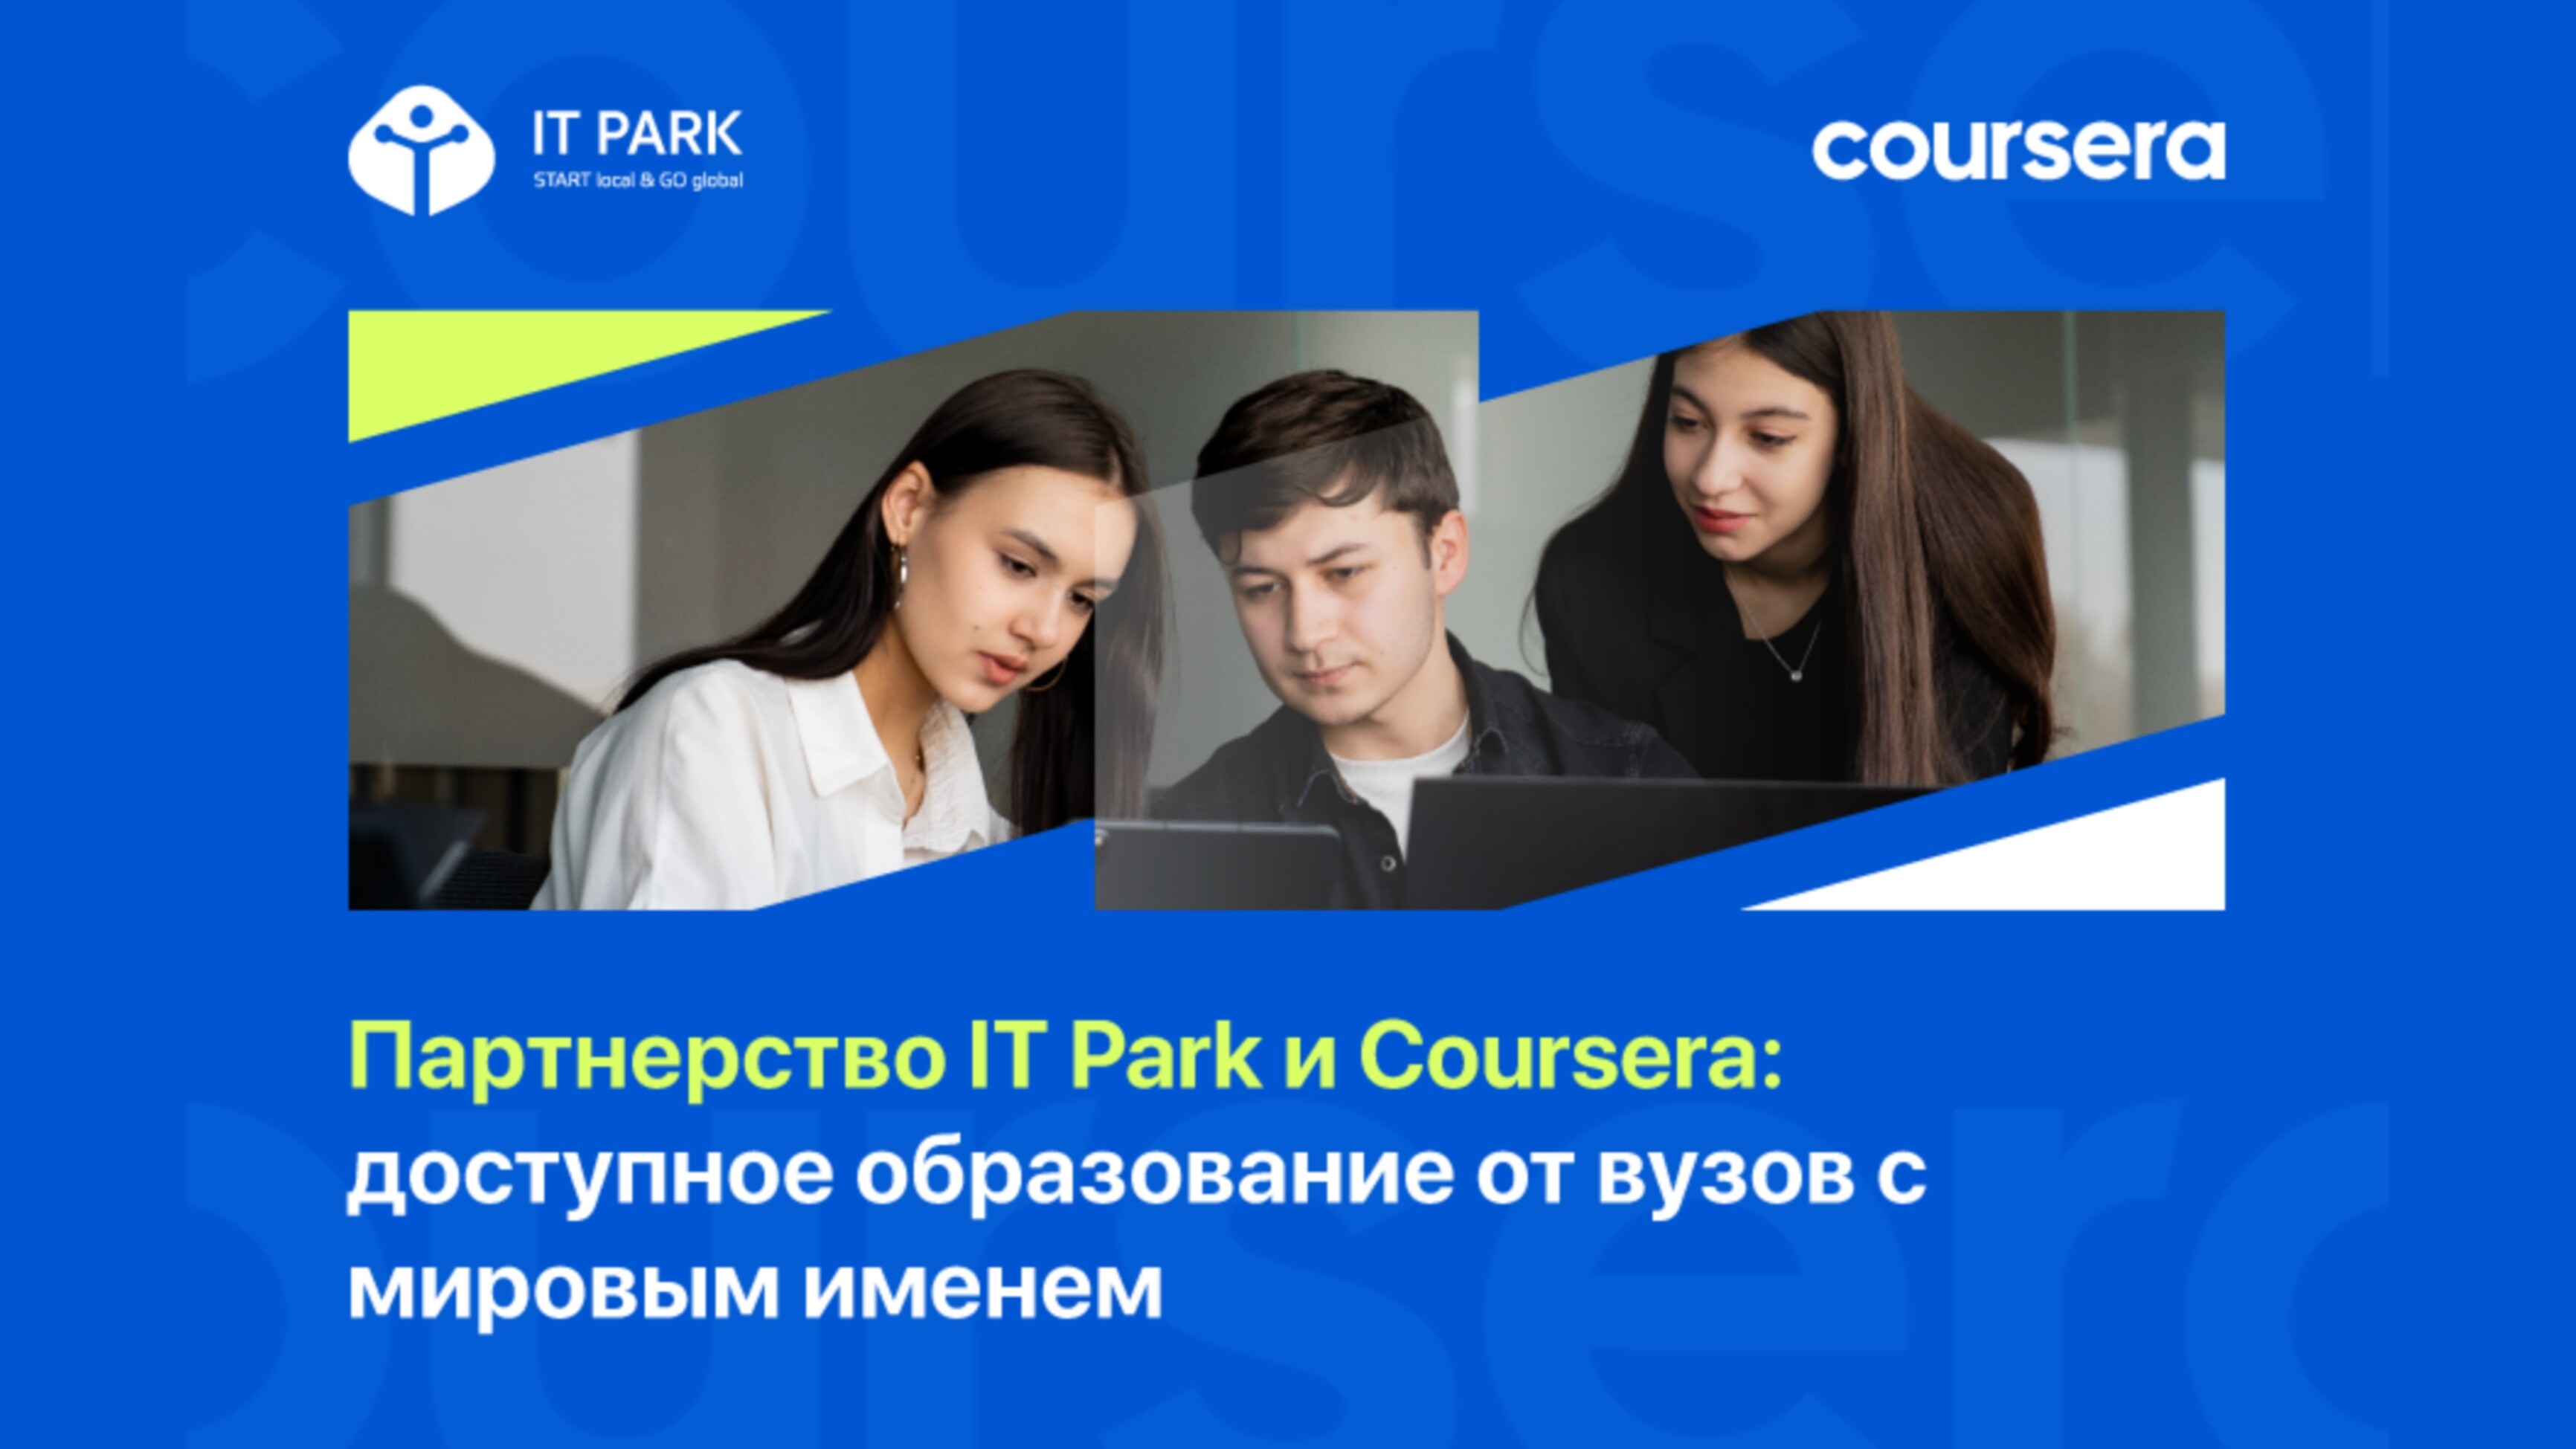 Коллаборация IT Park и Coursera: курсы от ведущих мировых университетов стали доступнее и выгоднее